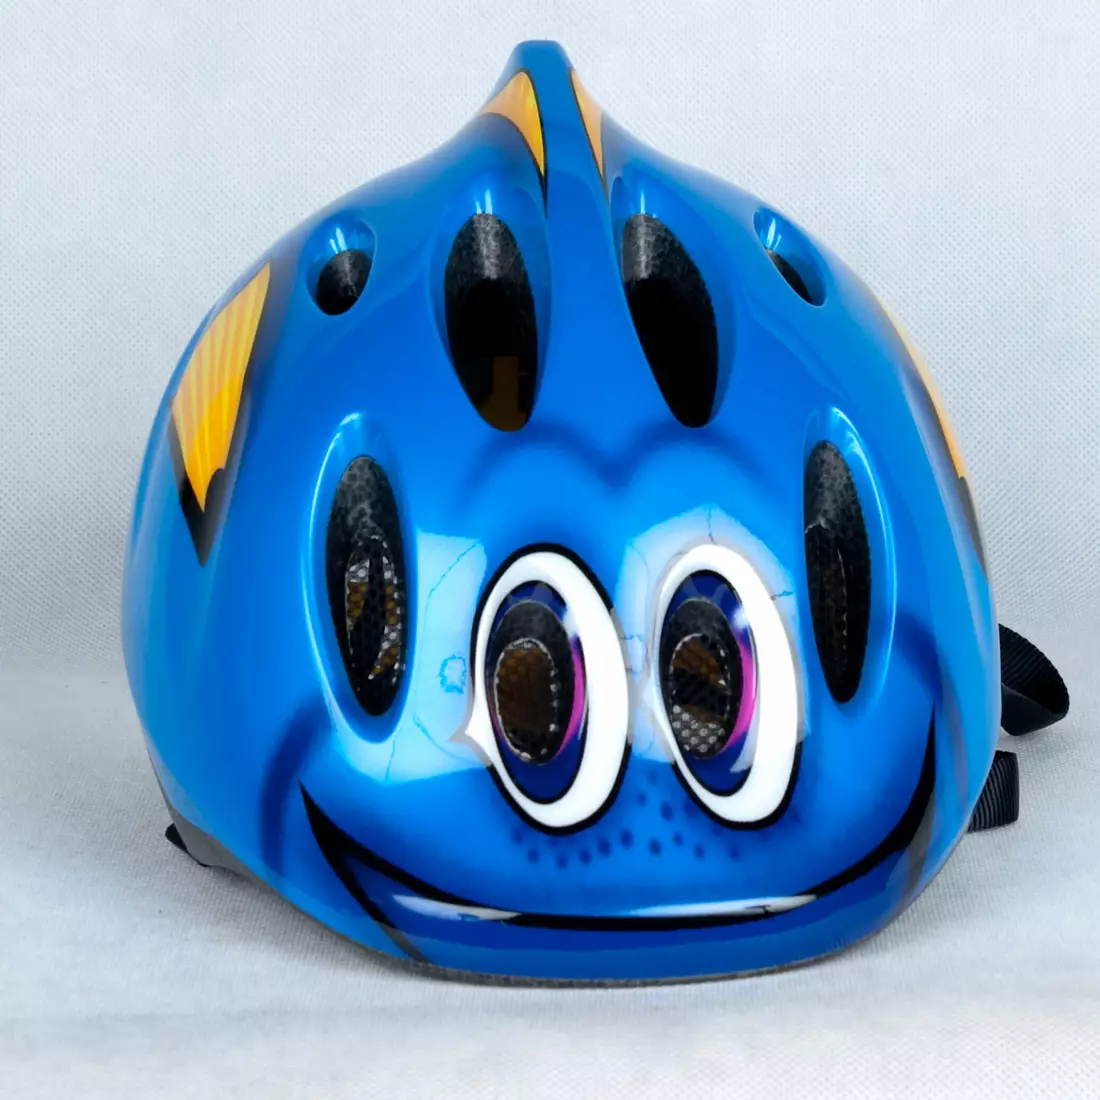 LAZER - MAX PLUS children's helmet - fish